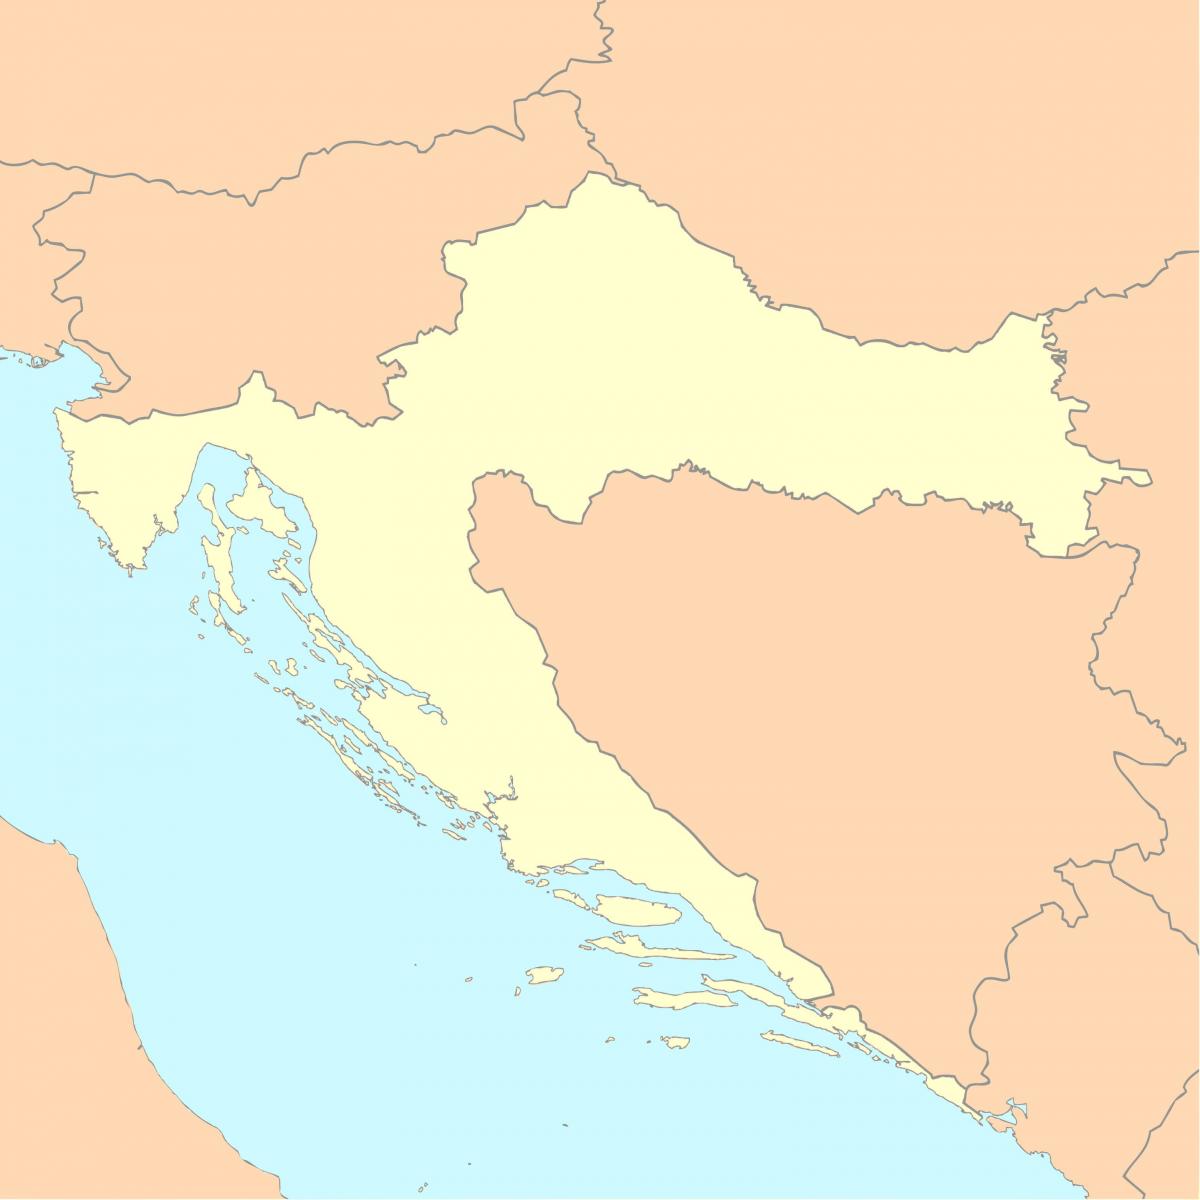 Mapa de Croacia vacío